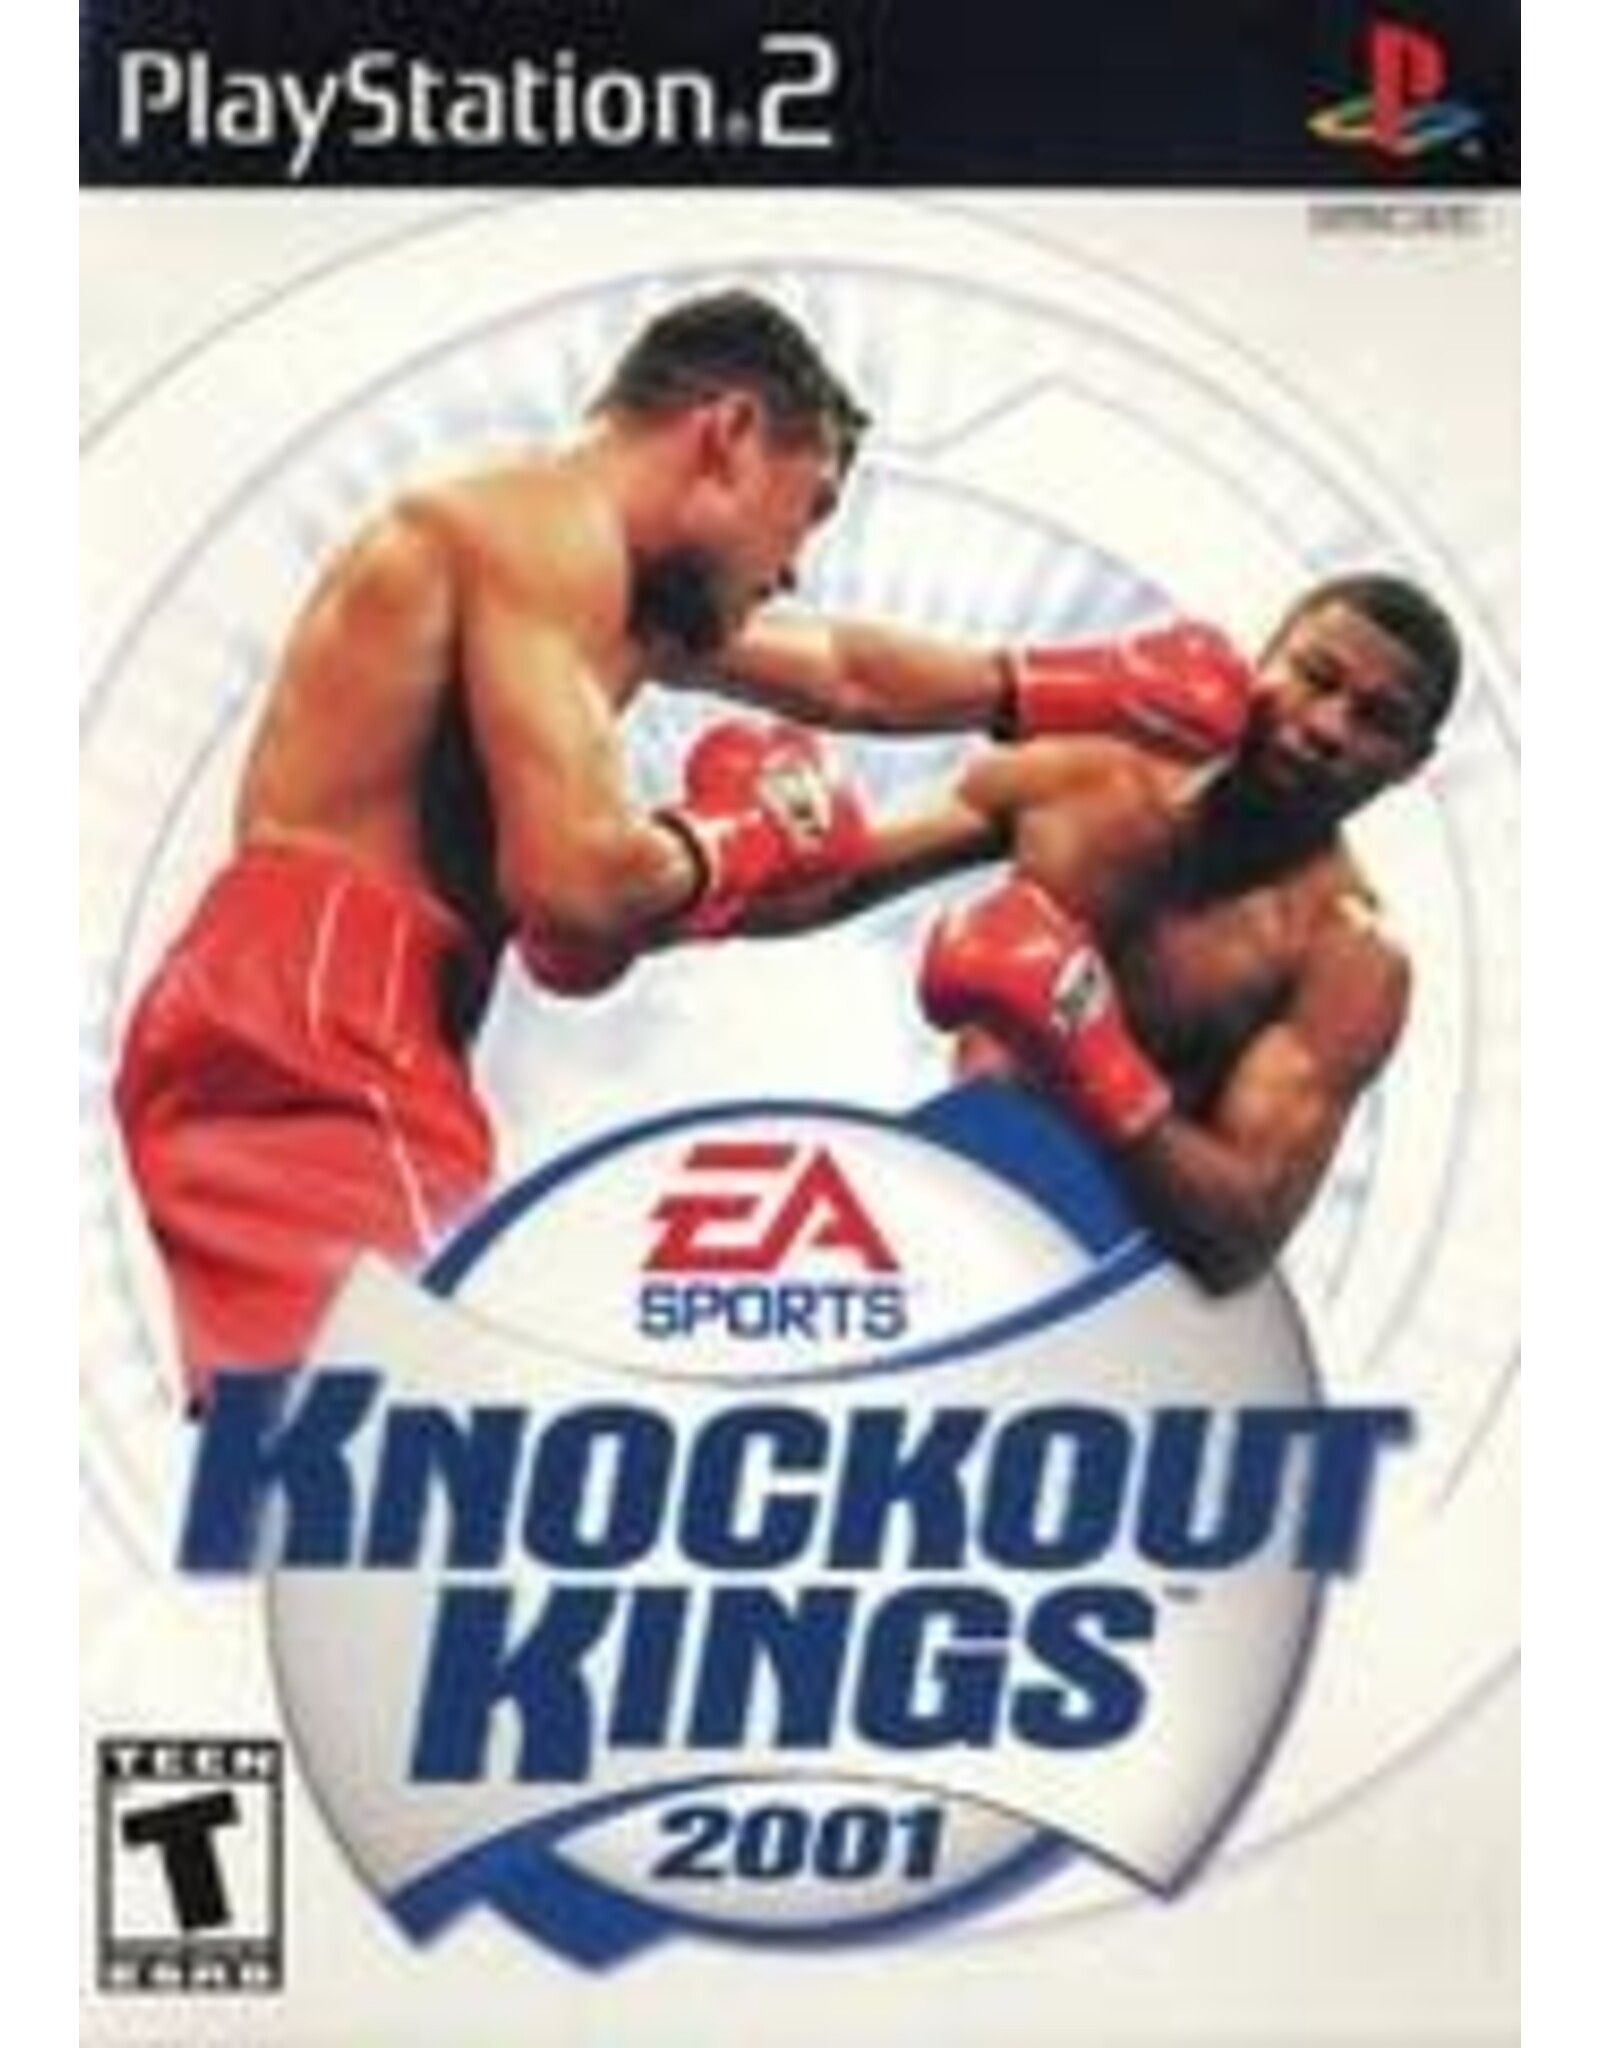 Playstation 2 Knockout Kings 2001 (CiB)